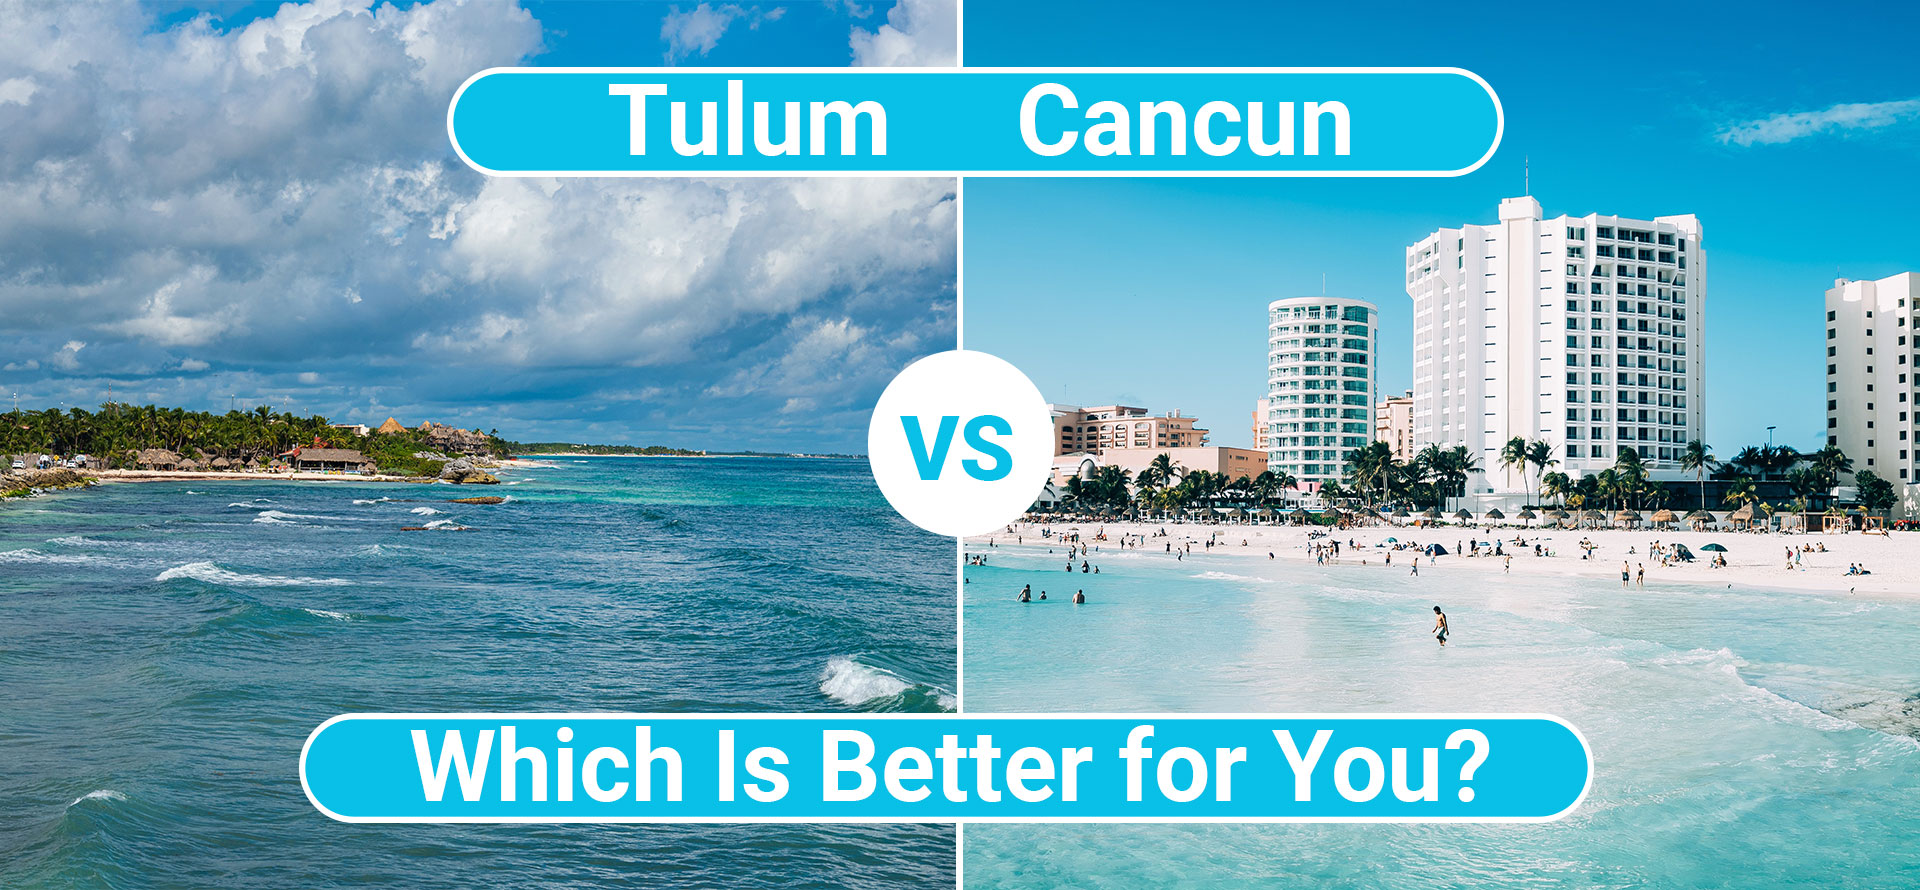 Tulum vs cancun.